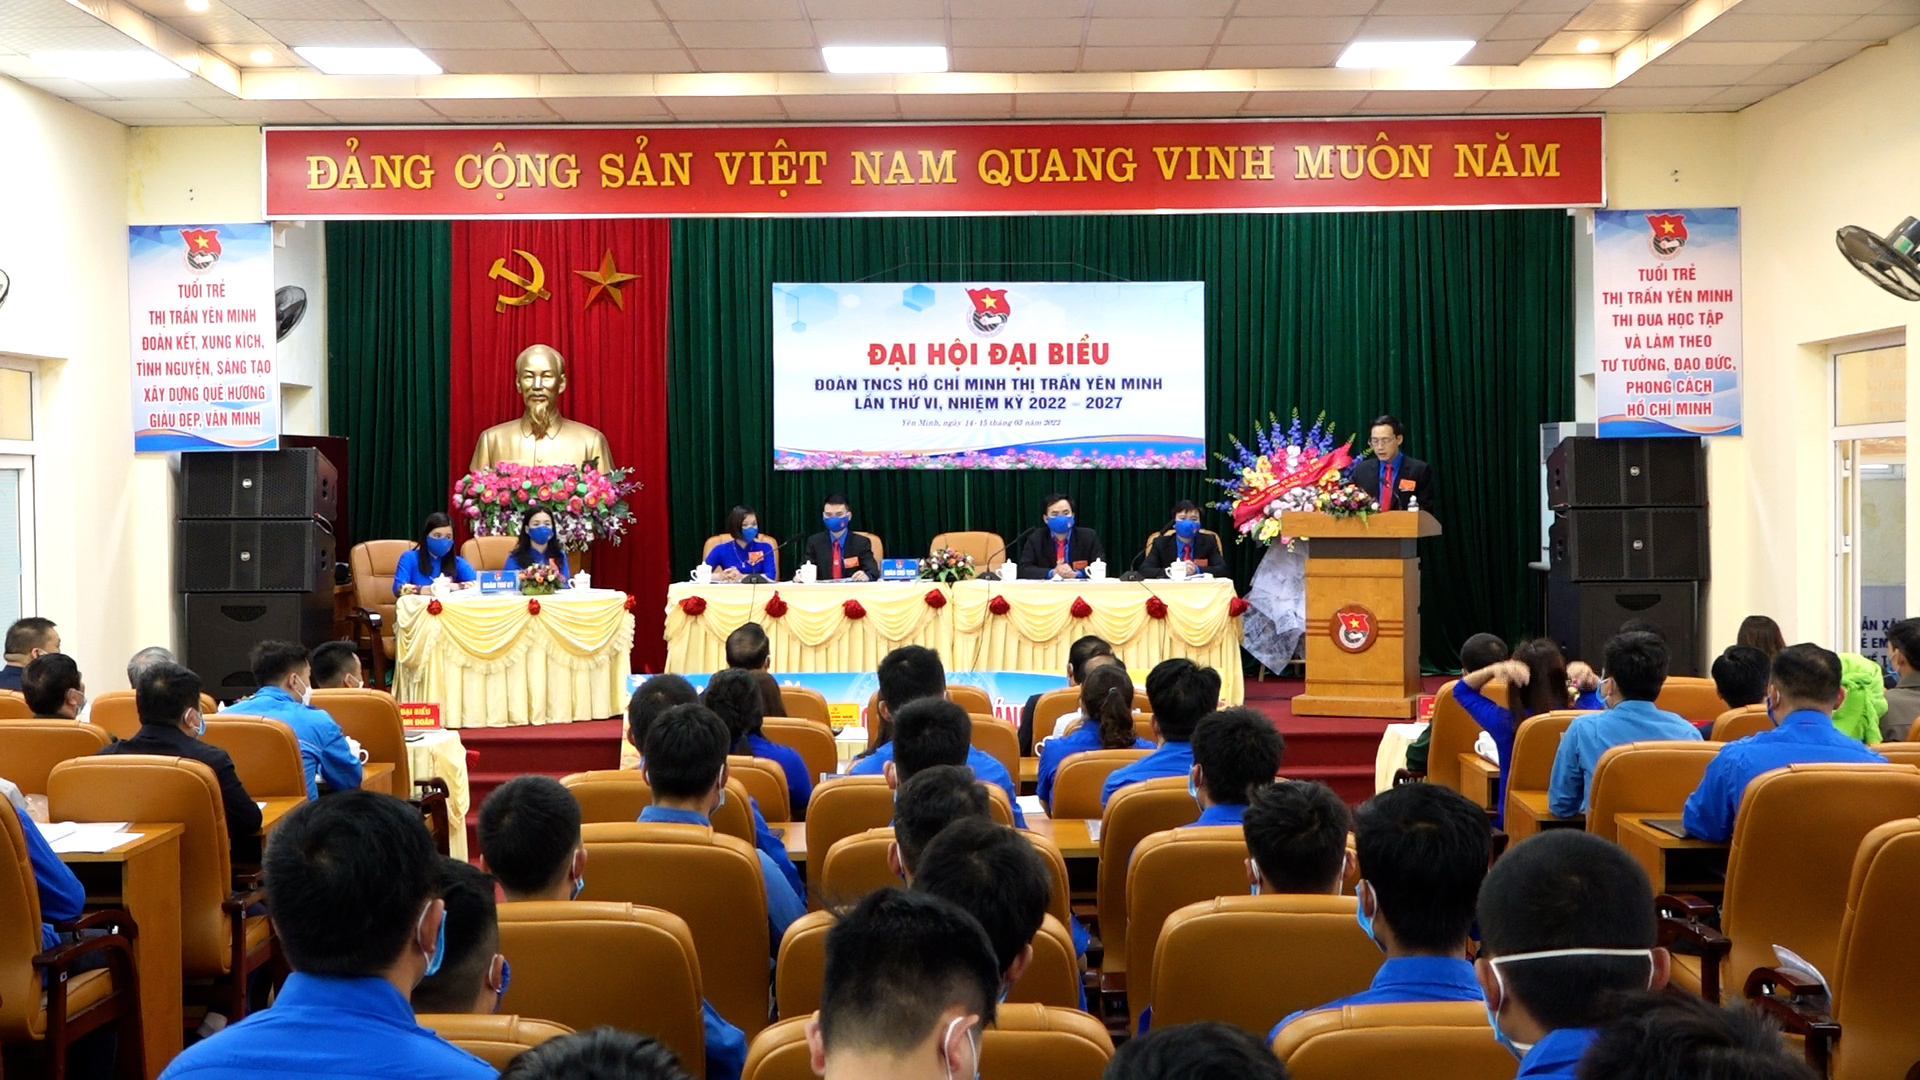 Đại hội Đoàn TNCS Hồ Chí Minh thị trấn Yên Minh lần thứ VI nhiệm kỳ 2022 - 2027